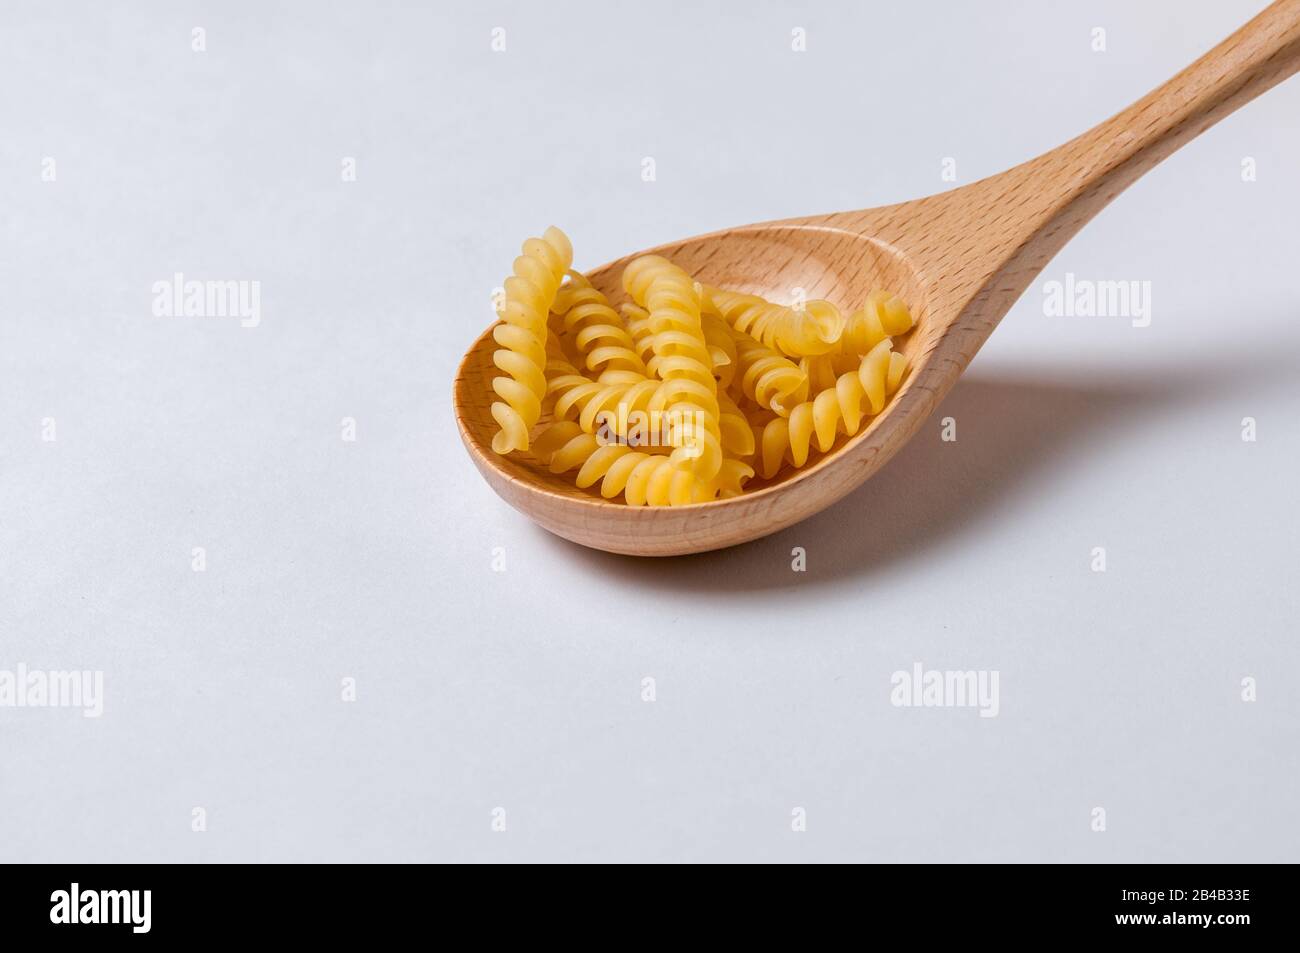 Pasta girandole on a white background. Stock Photo